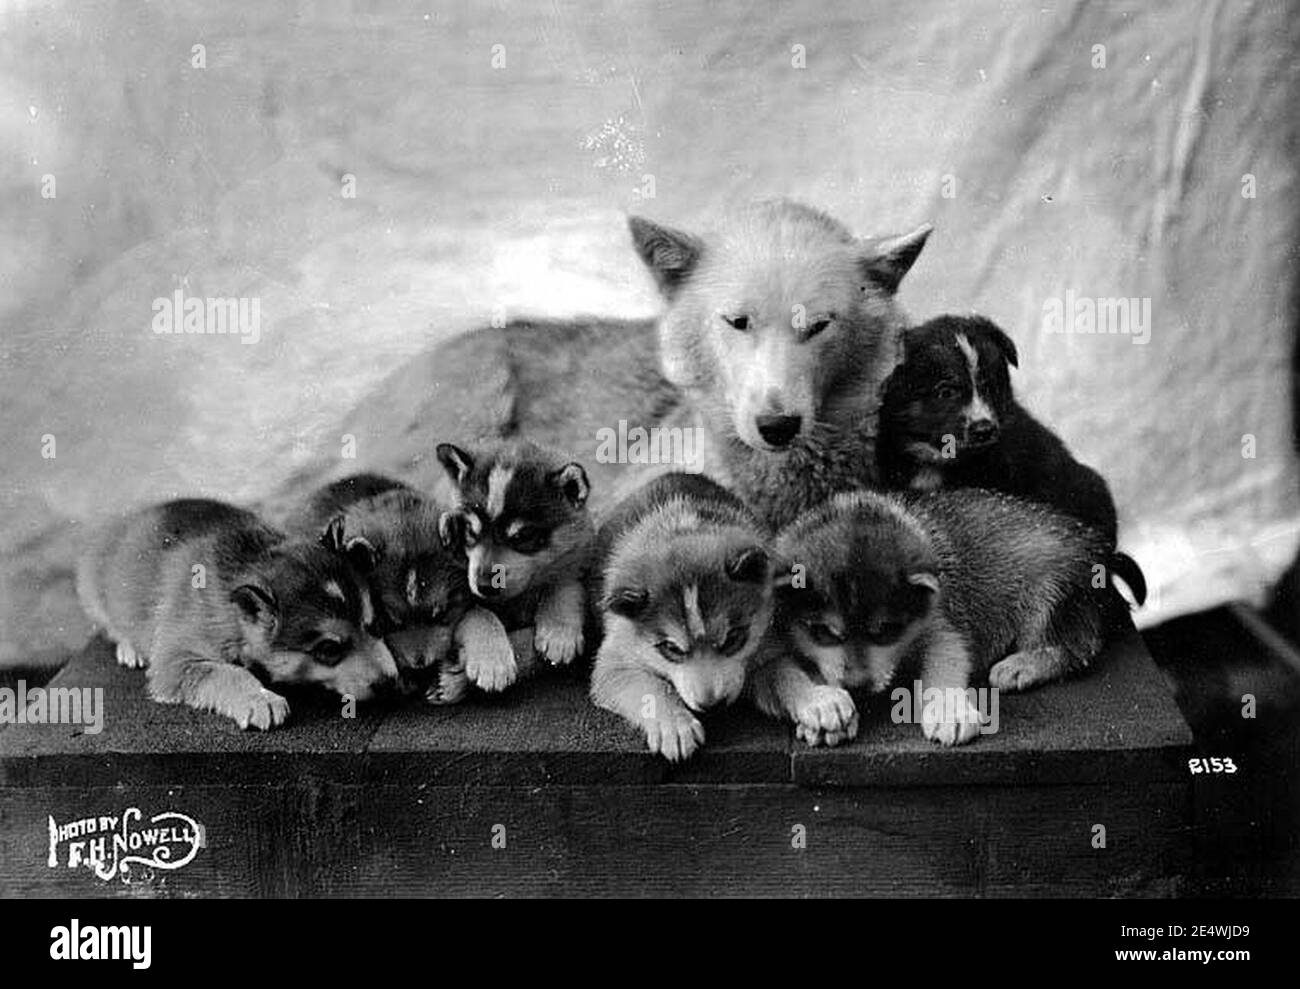 Malamute and puppies, nd (NOWELL 67). Stock Photo